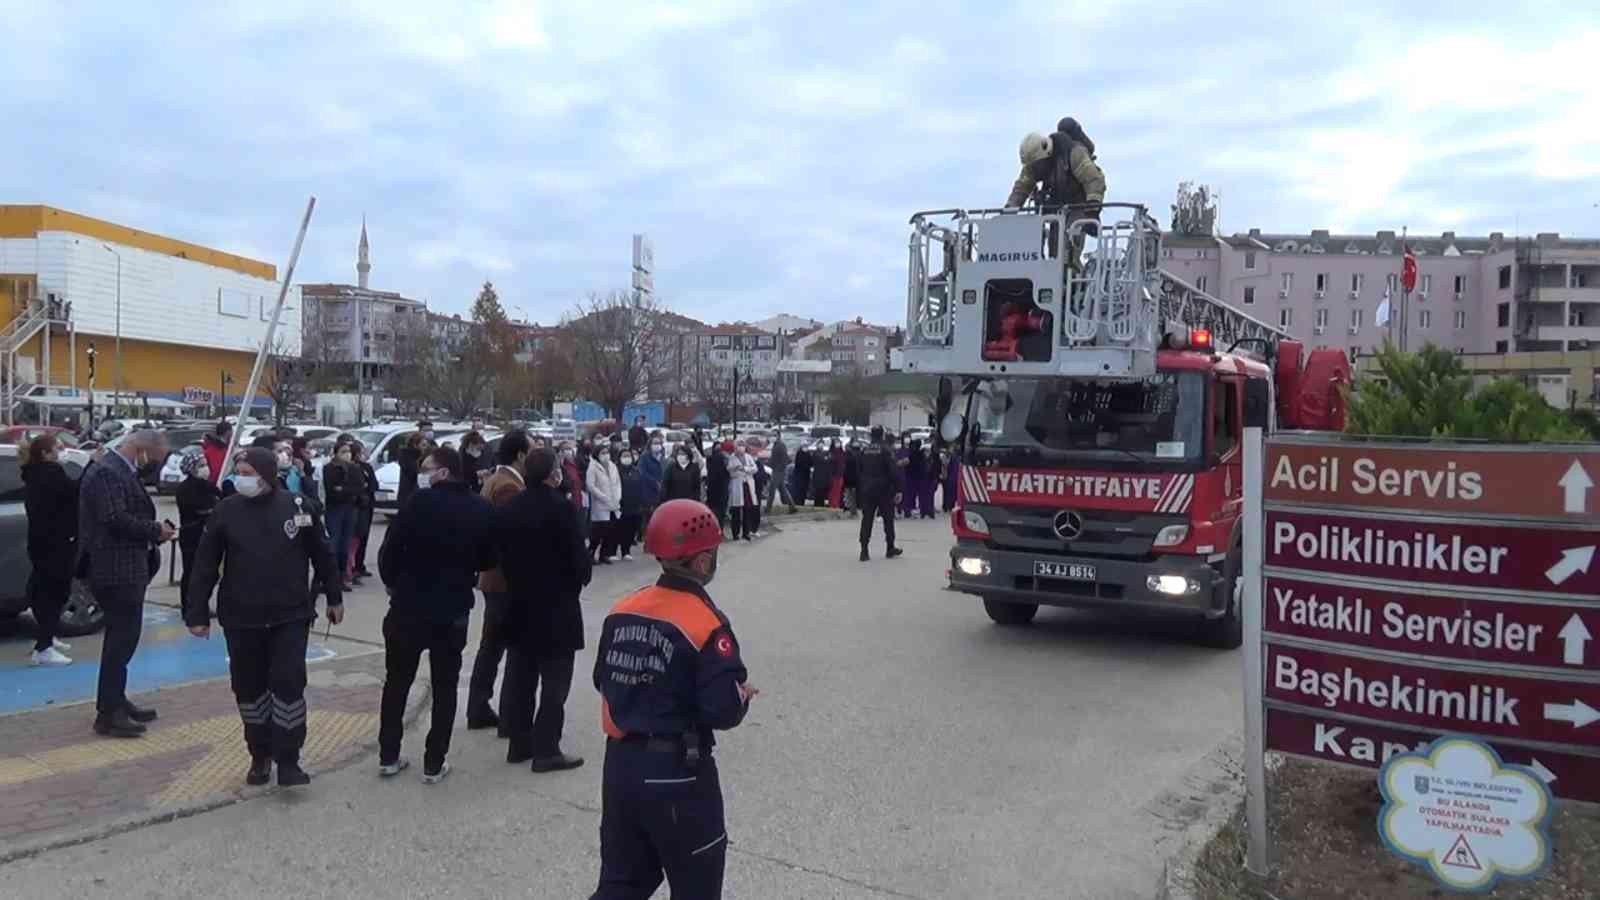 Silivri Devlet Hastanesinde yangın tatbikatı #istanbul